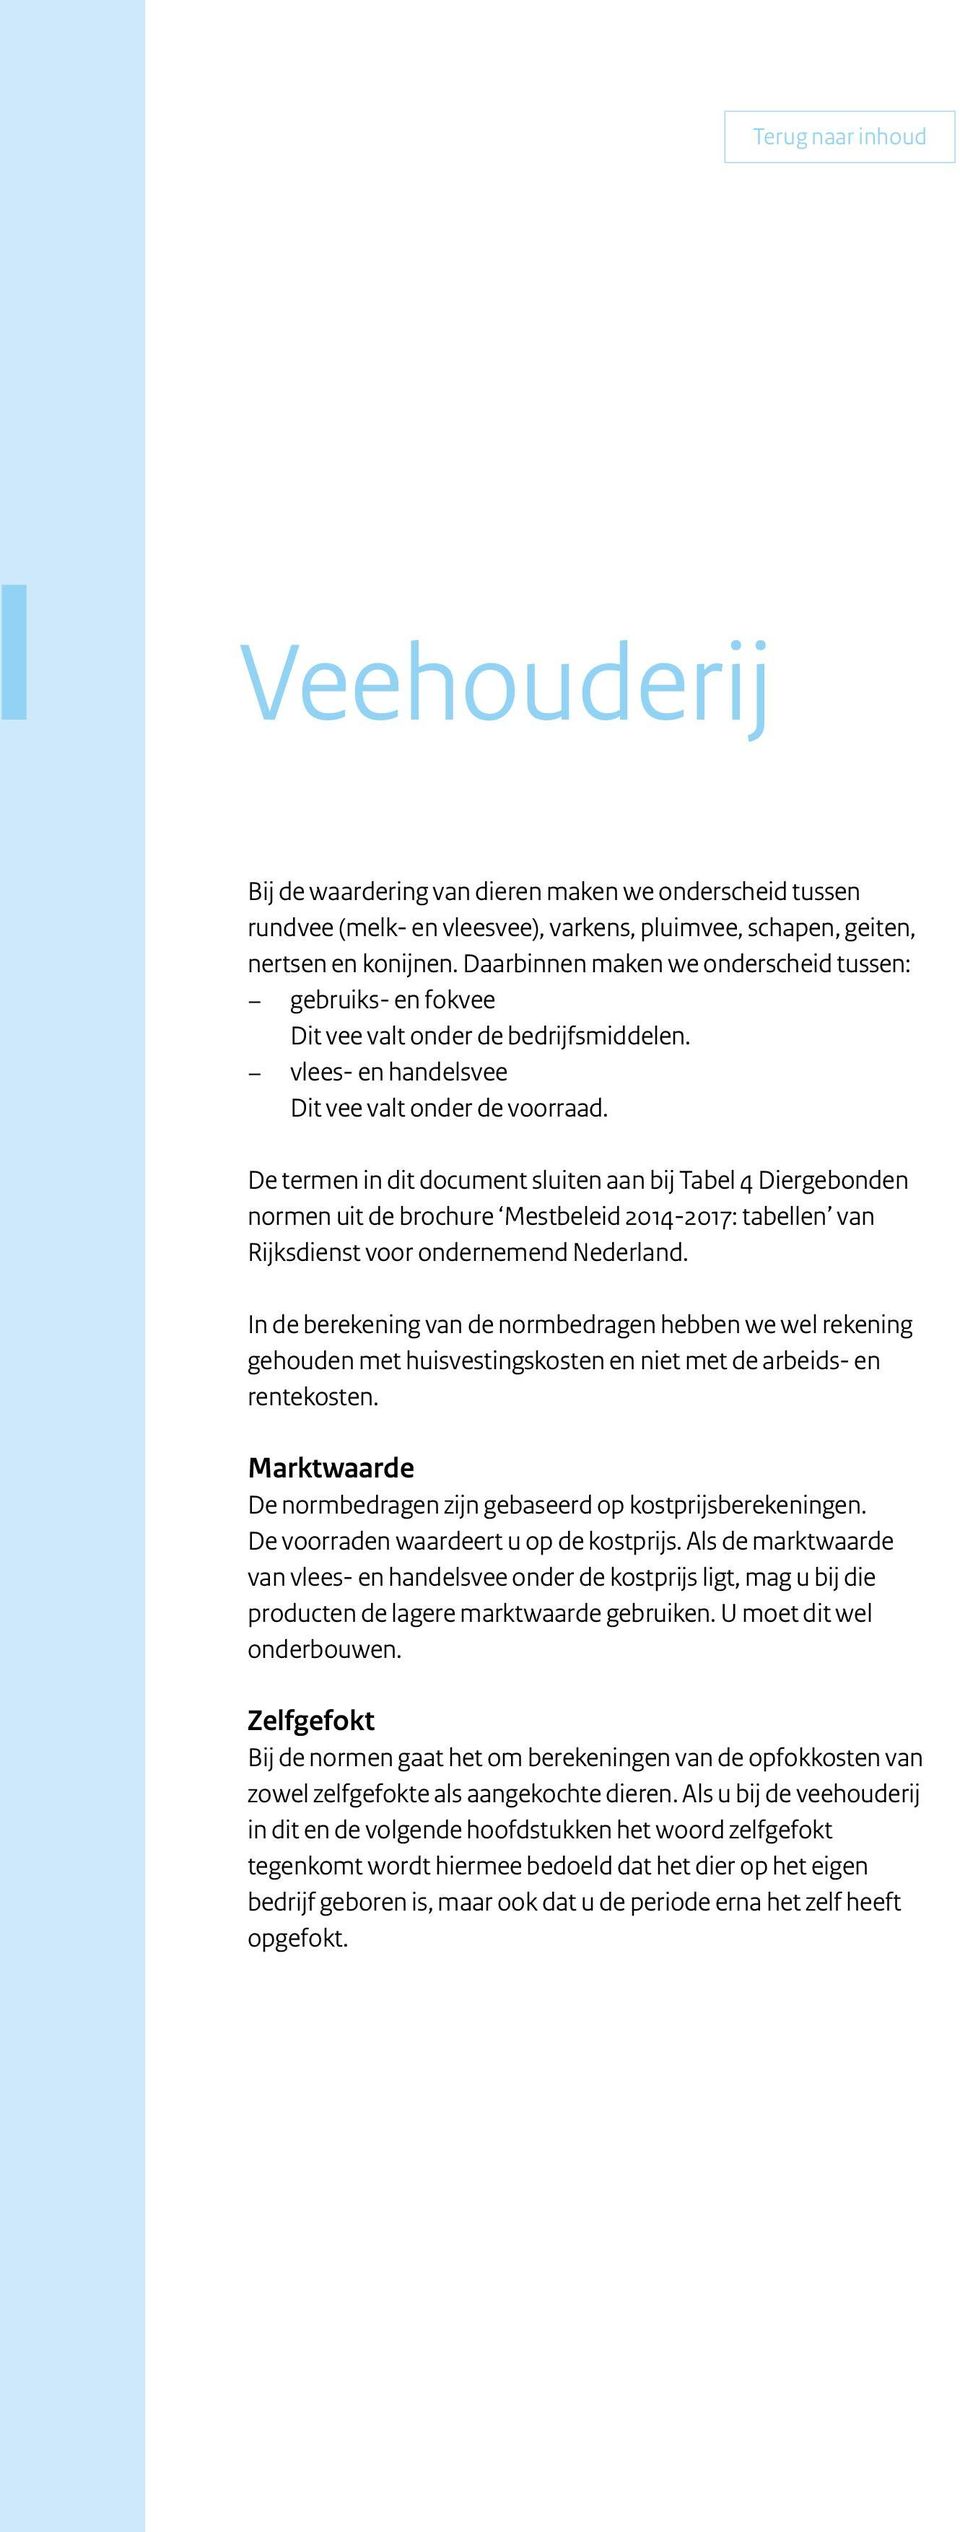 De termen in dit document sluiten aan bij Tabel 4 Diergebonden normen uit de brochure Mestbeleid 2014 2017: tabellen van Rijksdienst voor ondernemend Nederland.